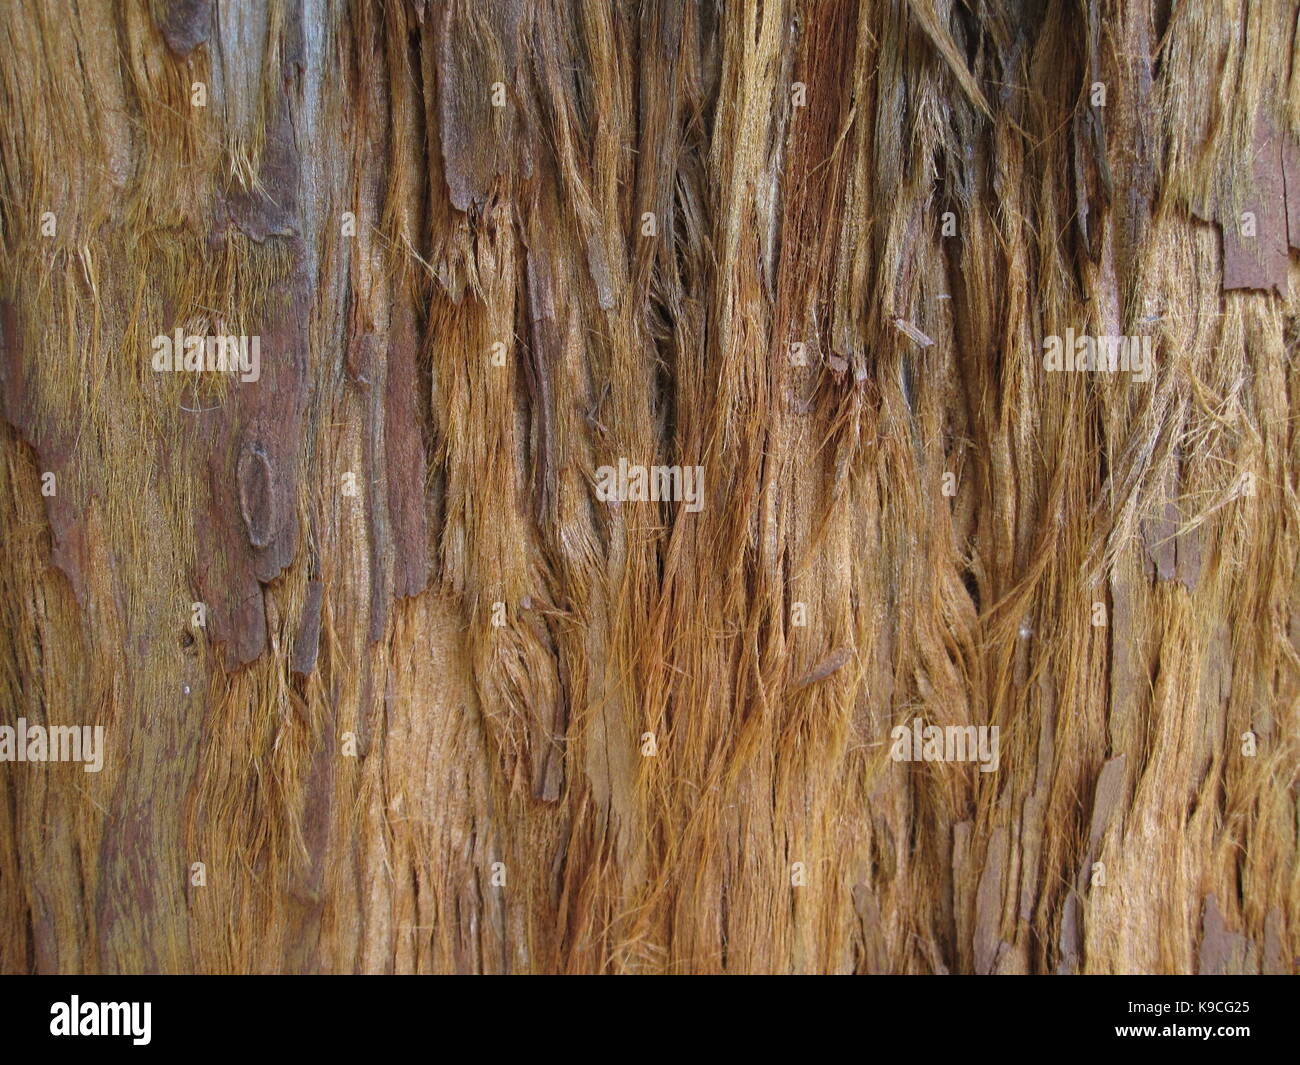 Casca de árvore com Fibras, rústica Stockfoto